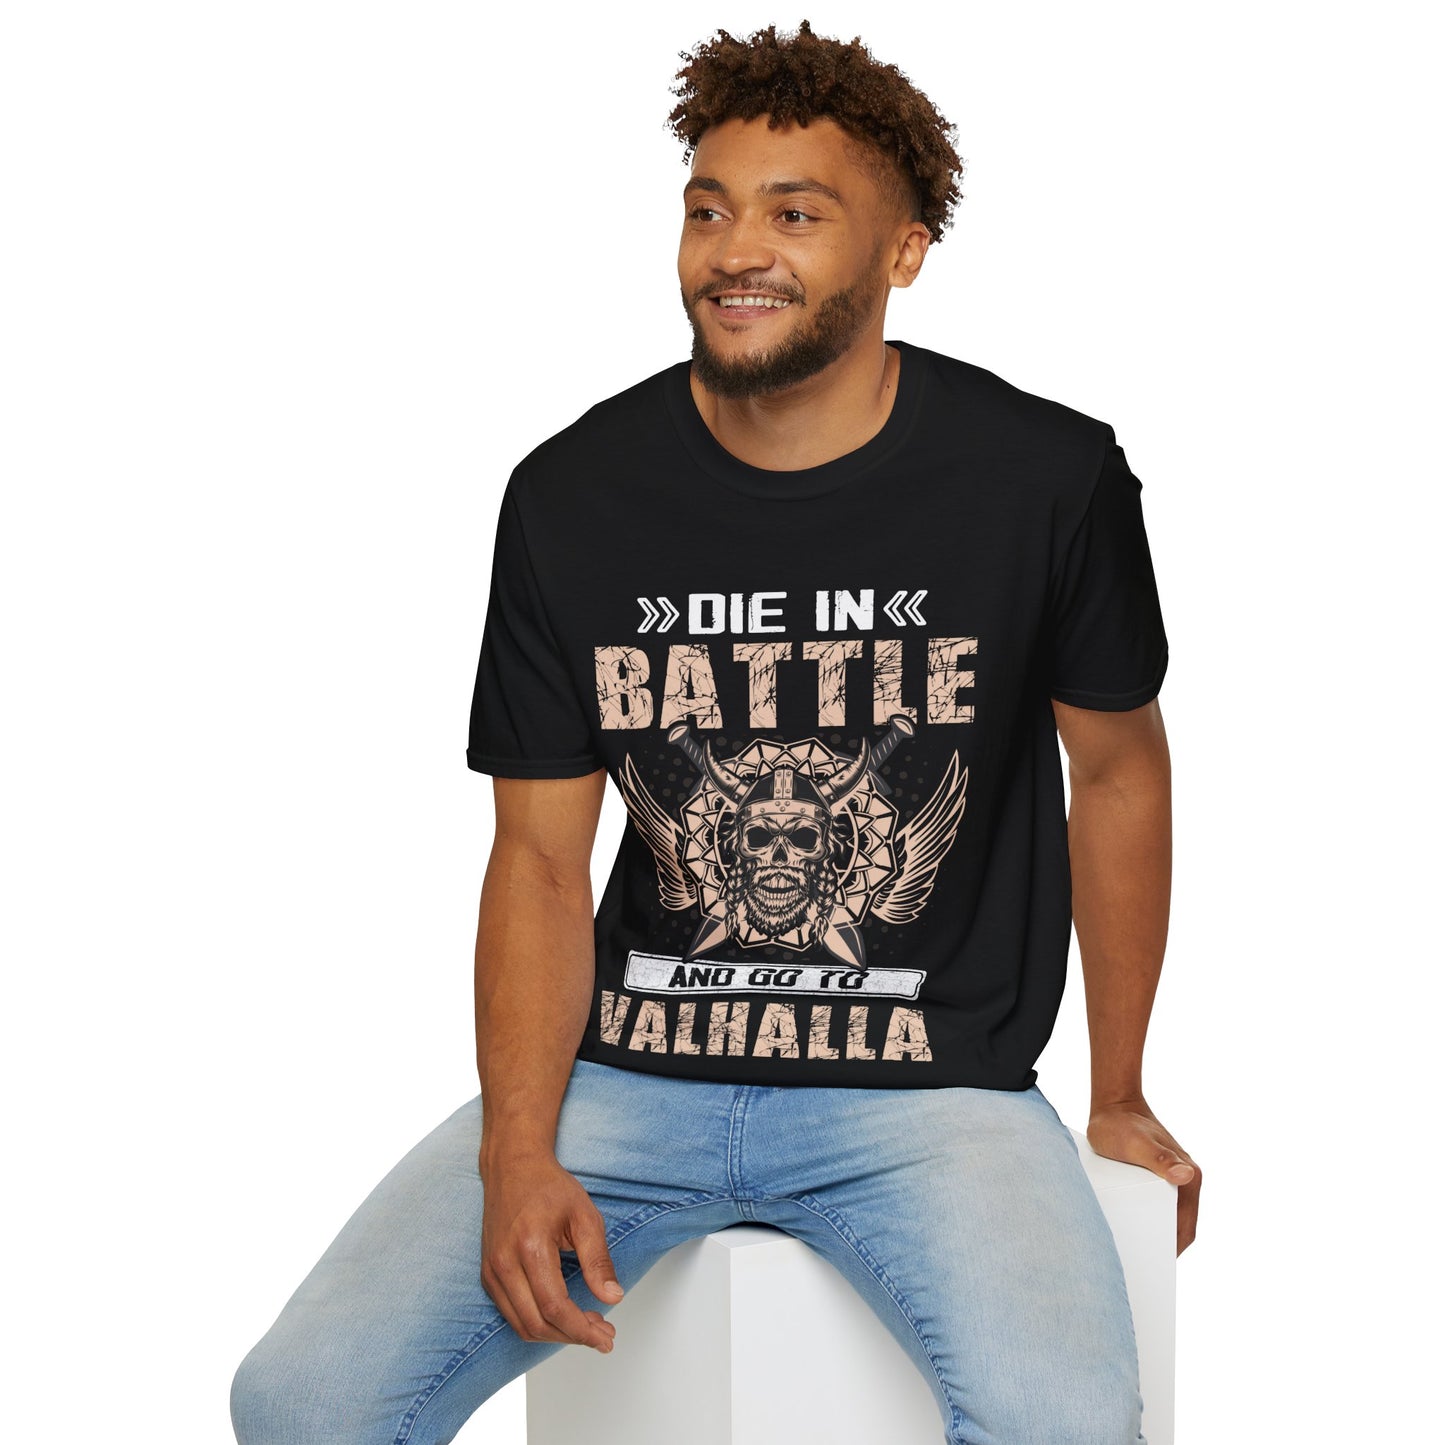 Die In Battle And Go To Valhalla T-Shirt